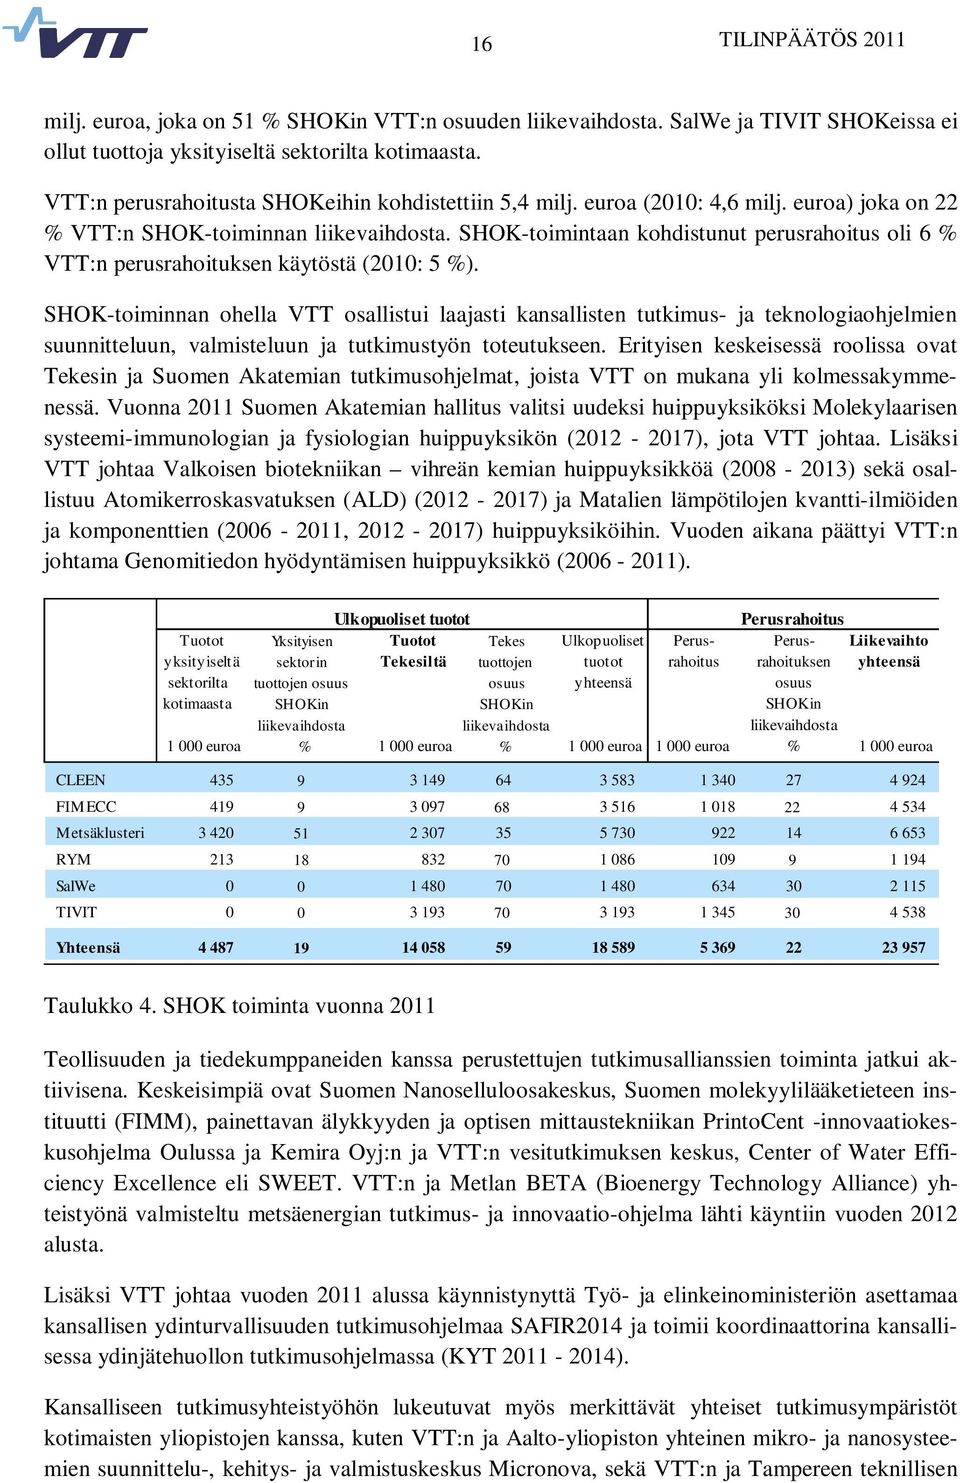 SHOK-toimintaan kohdistunut perusrahoitus oli 6 % VTT:n perusrahoituksen käytöstä (2010: 5 %).